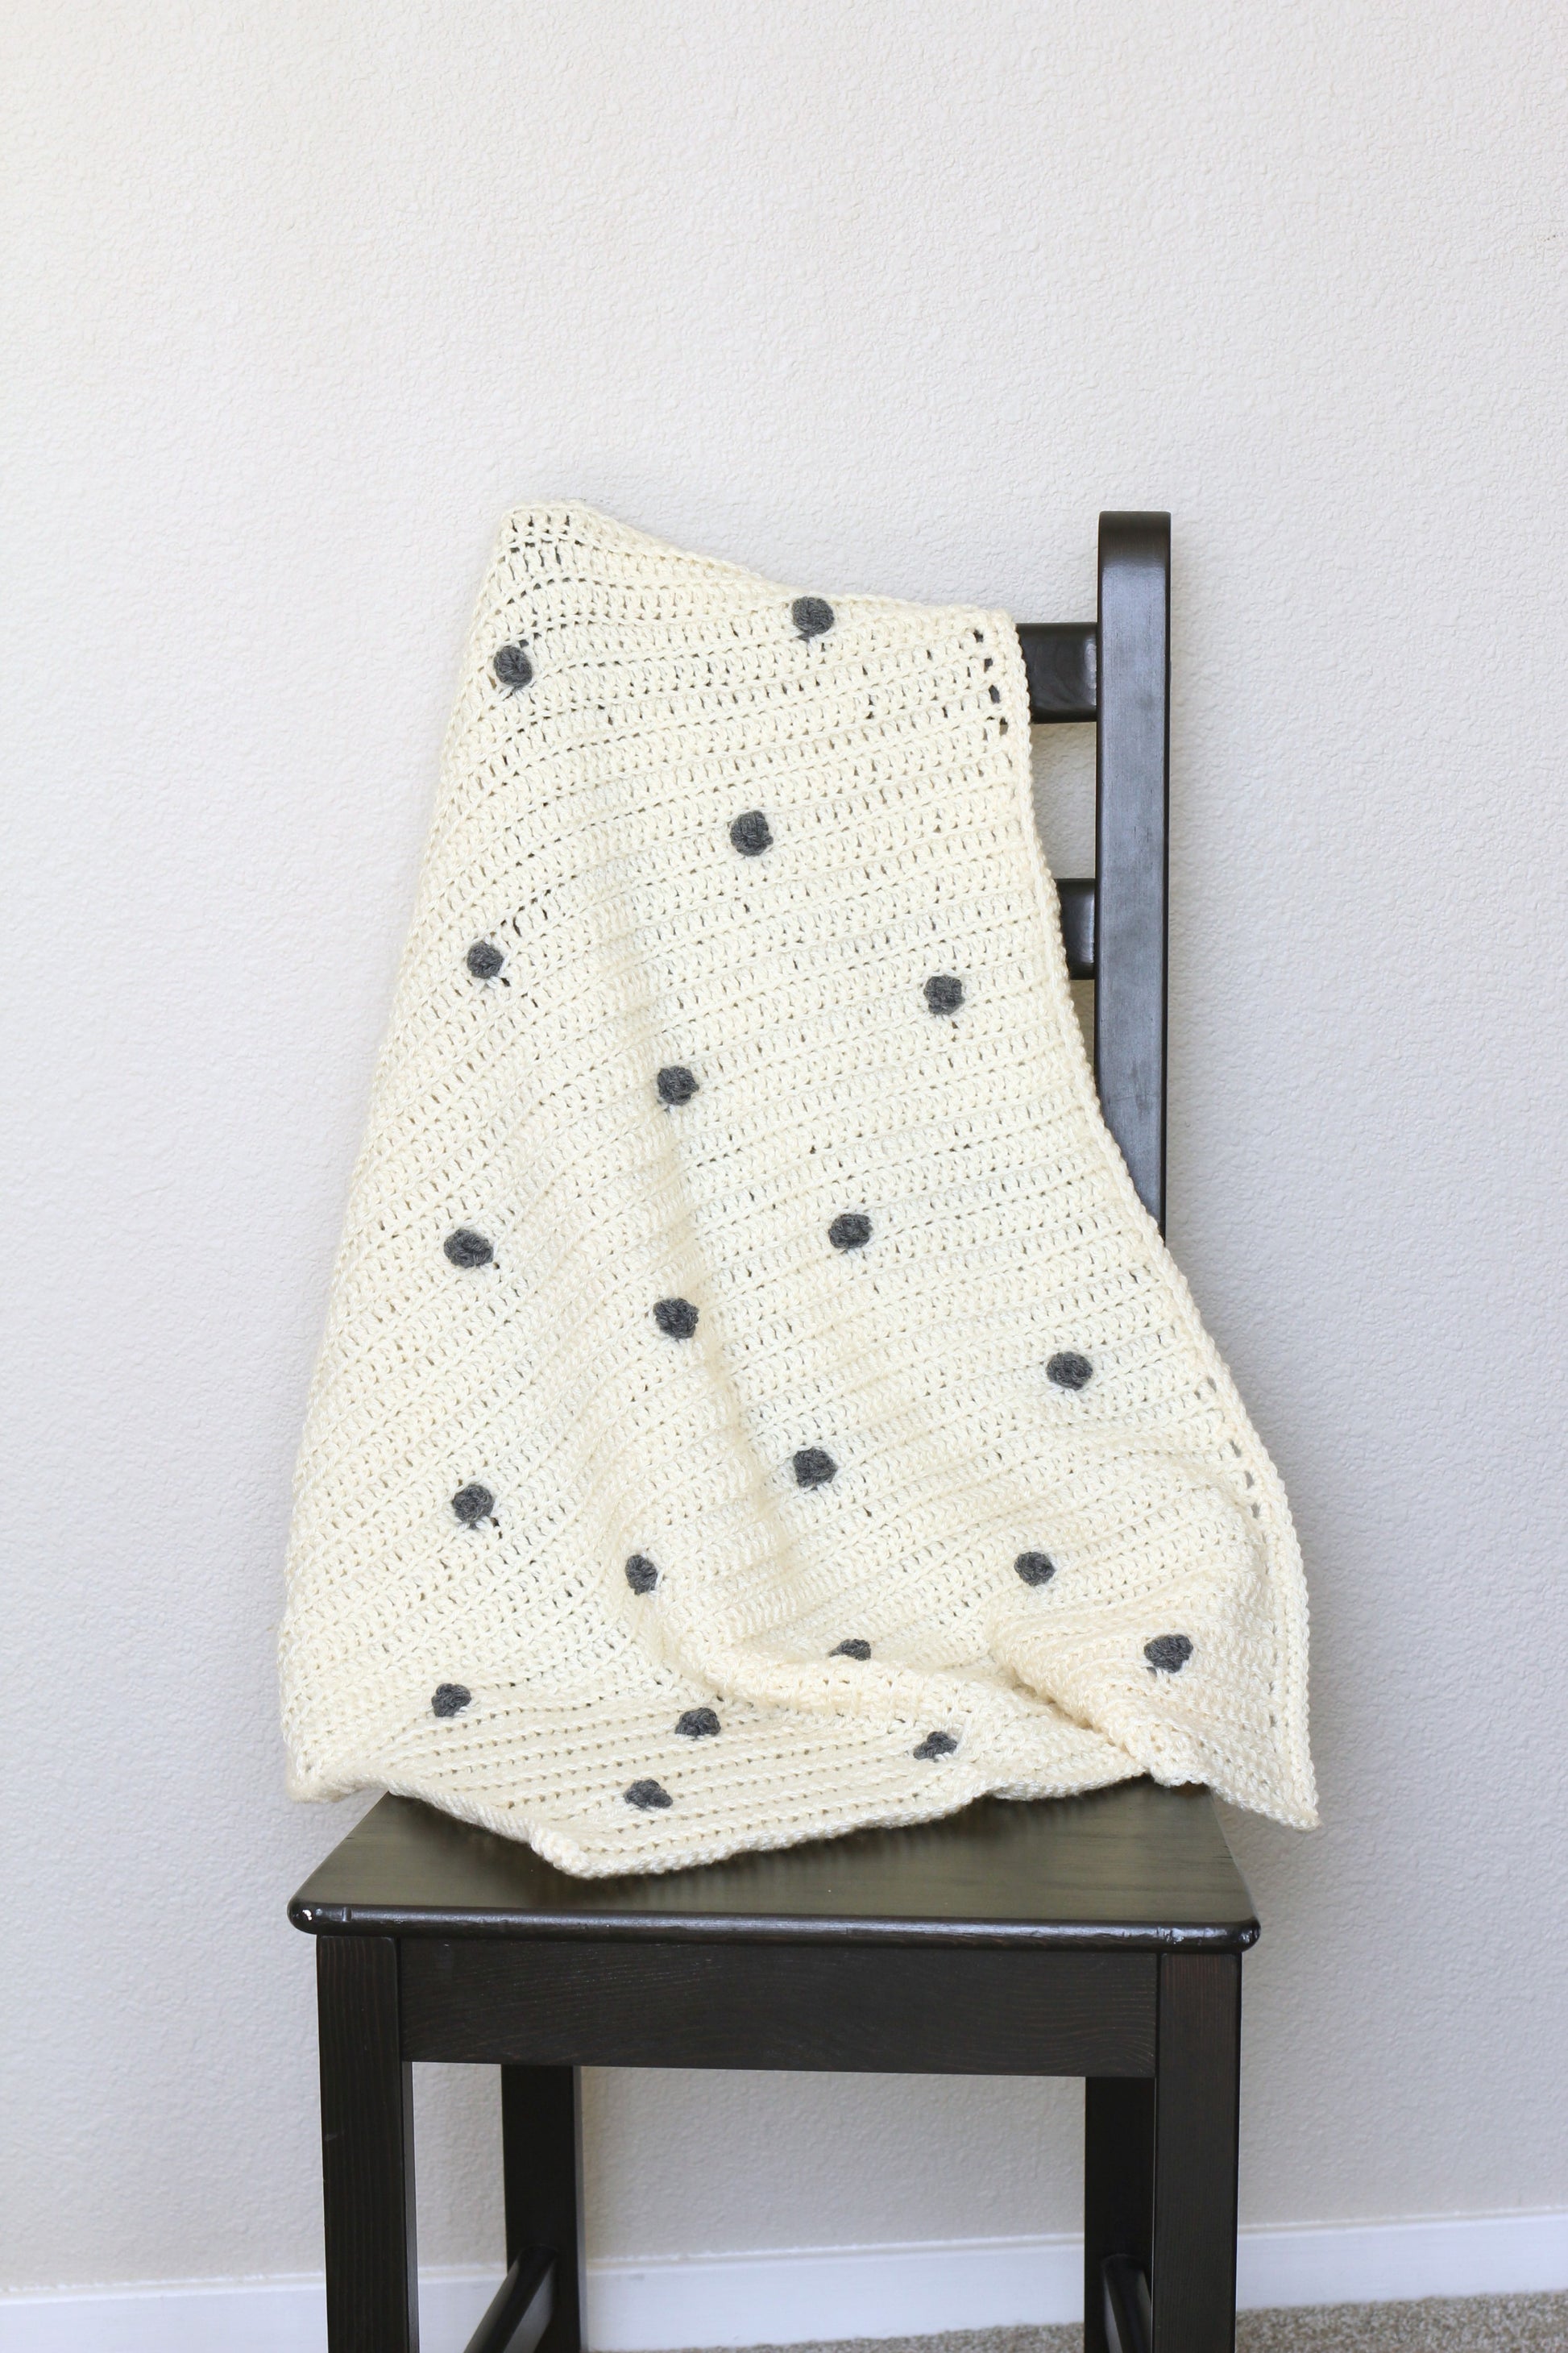 DIY Crochet kit - crochet baby blanket with bobbles, newborn blanket, baby shower gift - Augusta Blanket